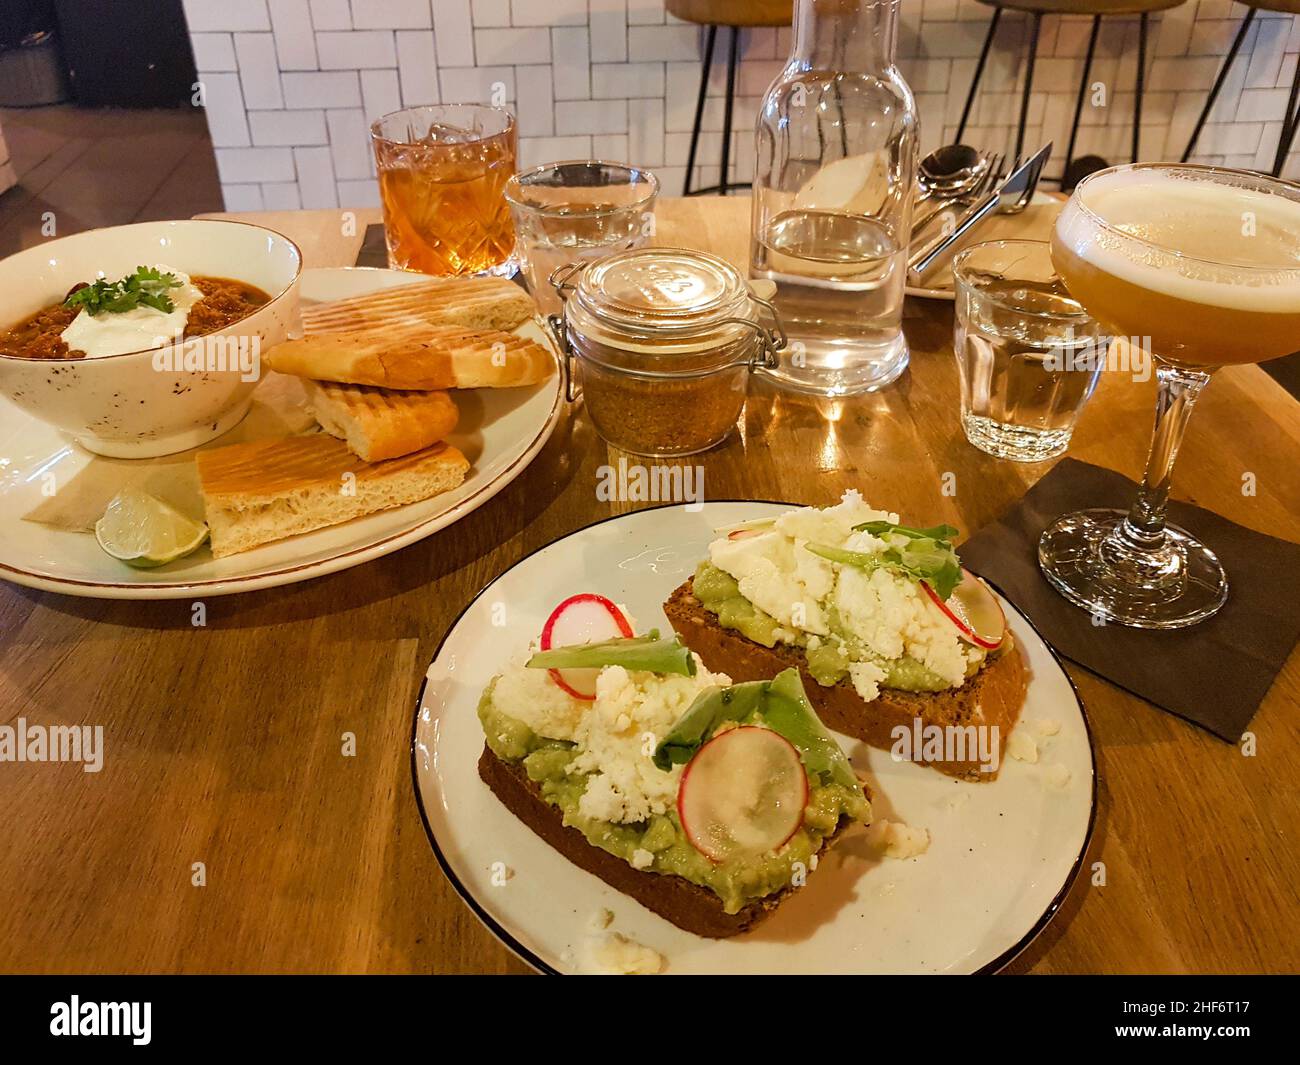 Nahaufnahme eines zertrümmerten Avocado-Sandwichs mit Rettich auf Roggenbrot, gegrilltem Brot mit Suppe und zwei Cocktails auf einem Holztisch-Hintergrund. Stockfoto